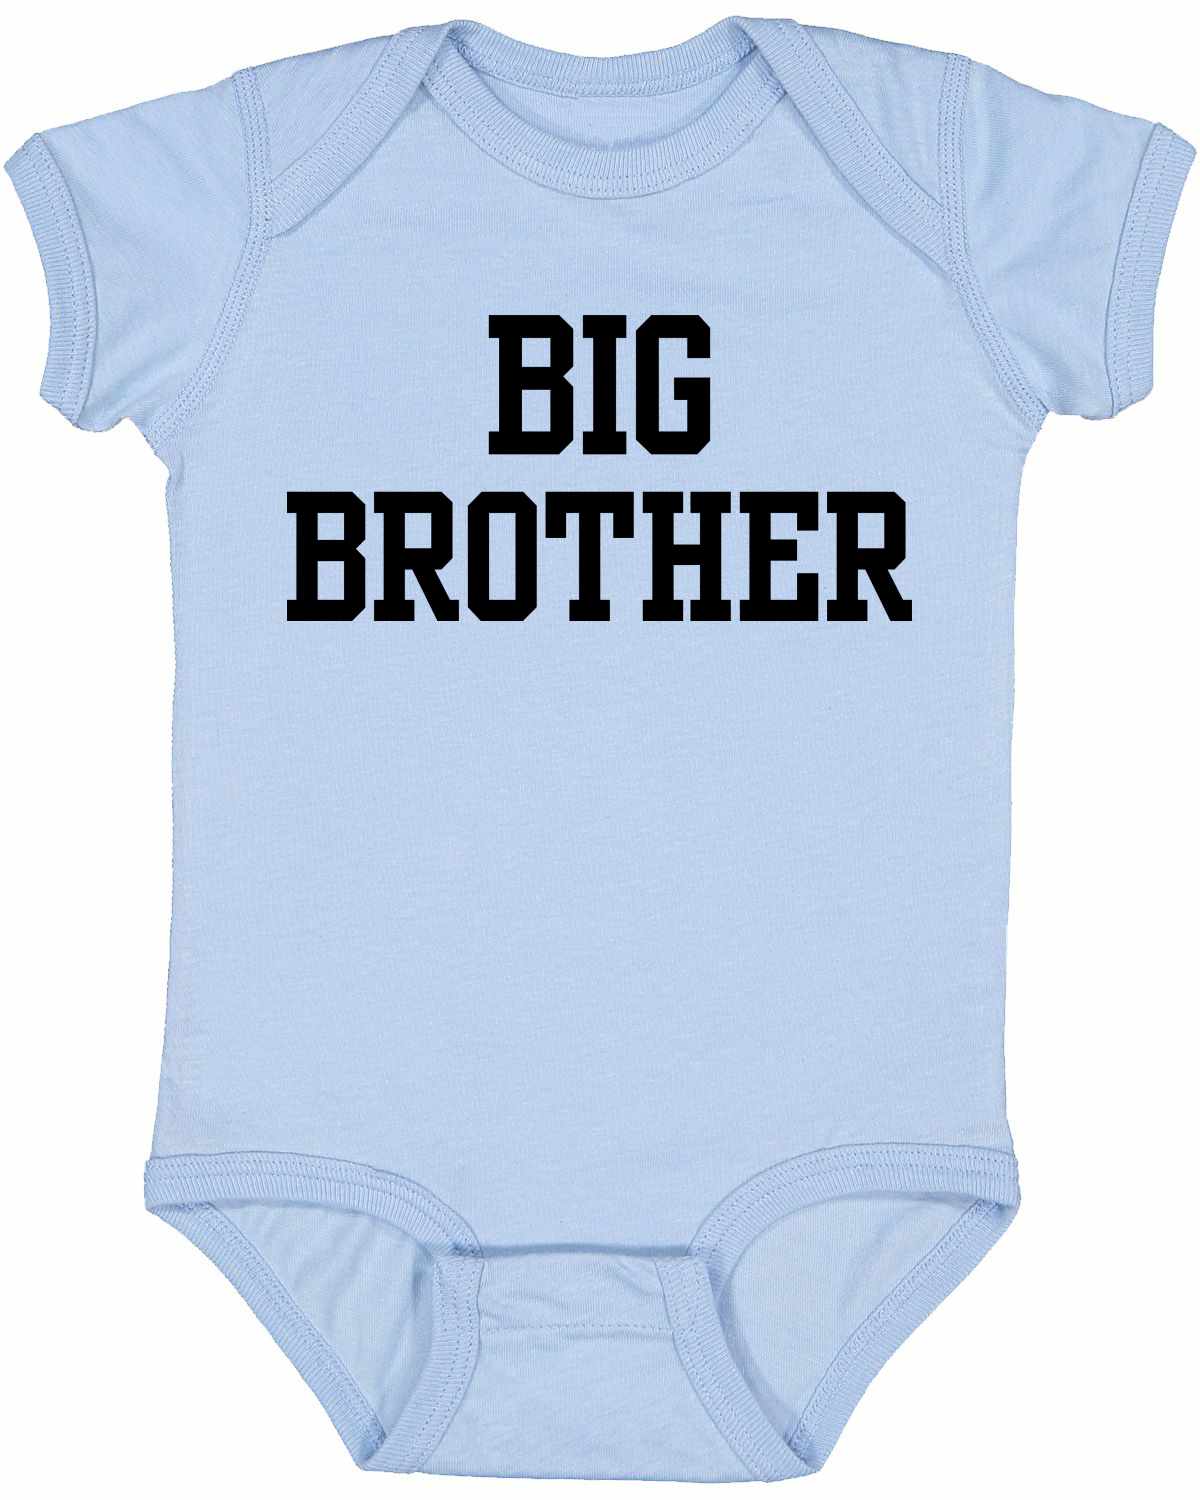 BIG BROTHER Infant BodySuit